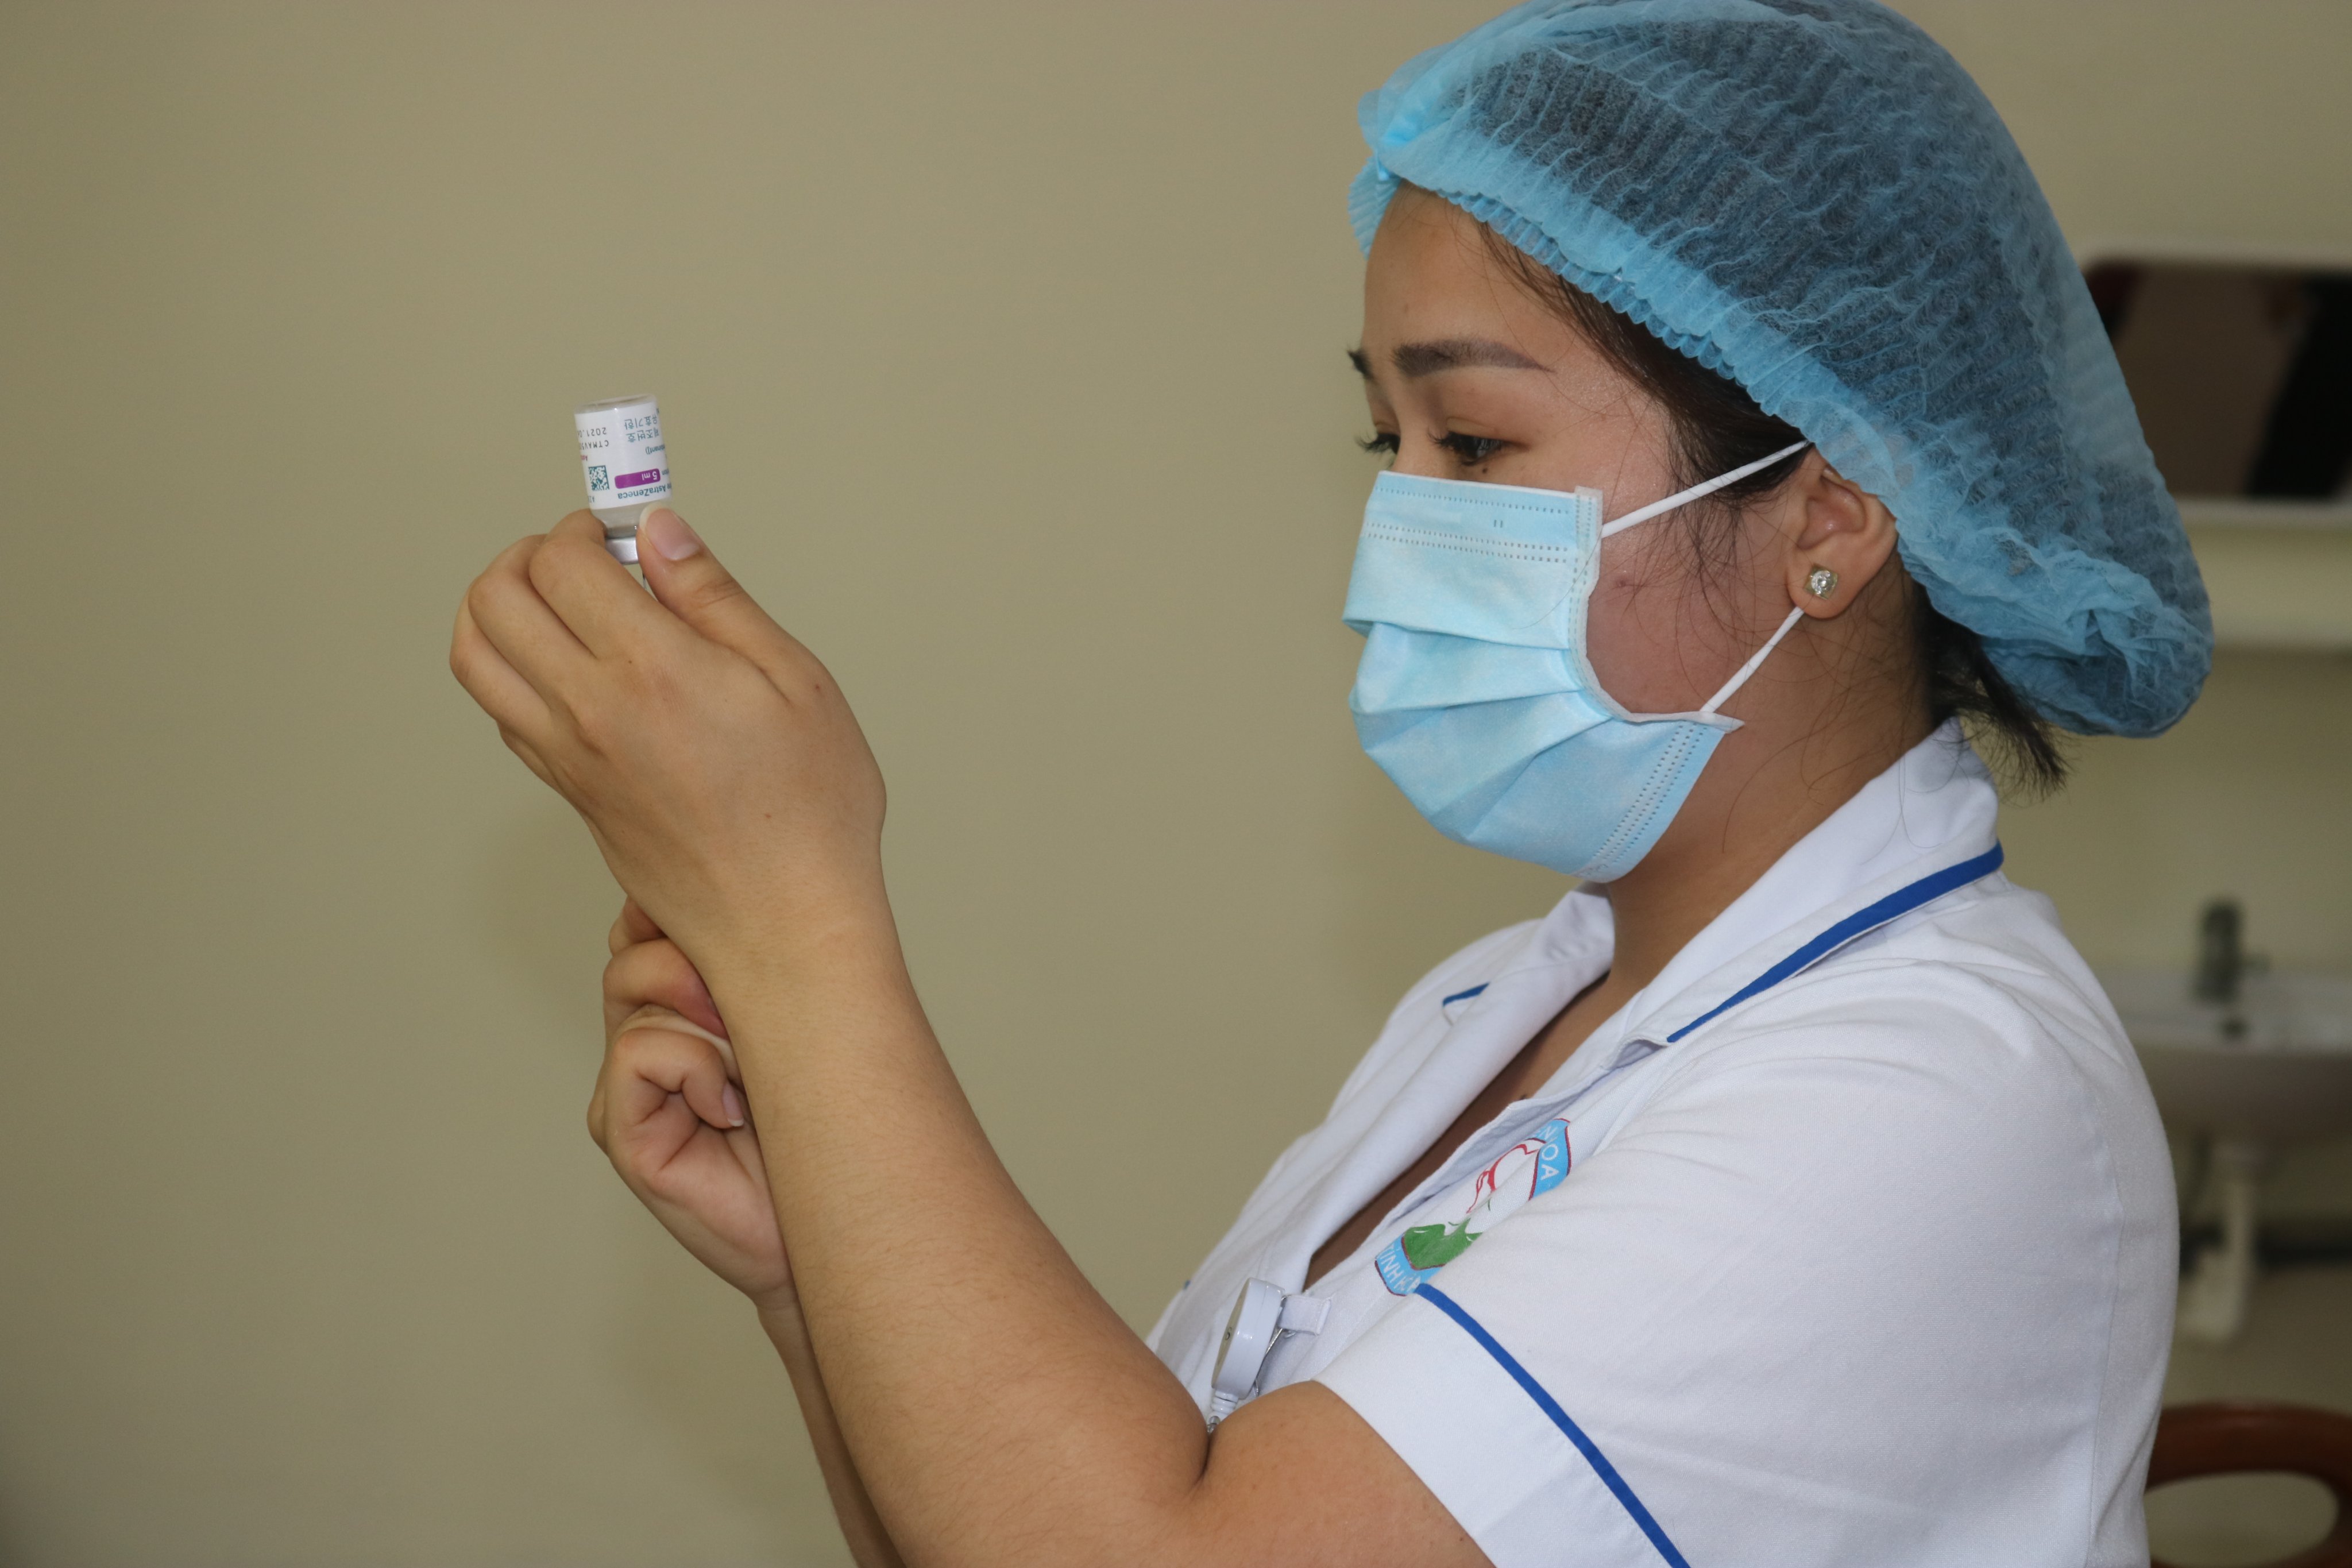  Quy trình tiêm vacine phòng COVID-19 an toàn tại Bệnh viện Đa khoa tỉnh Hoà Bình